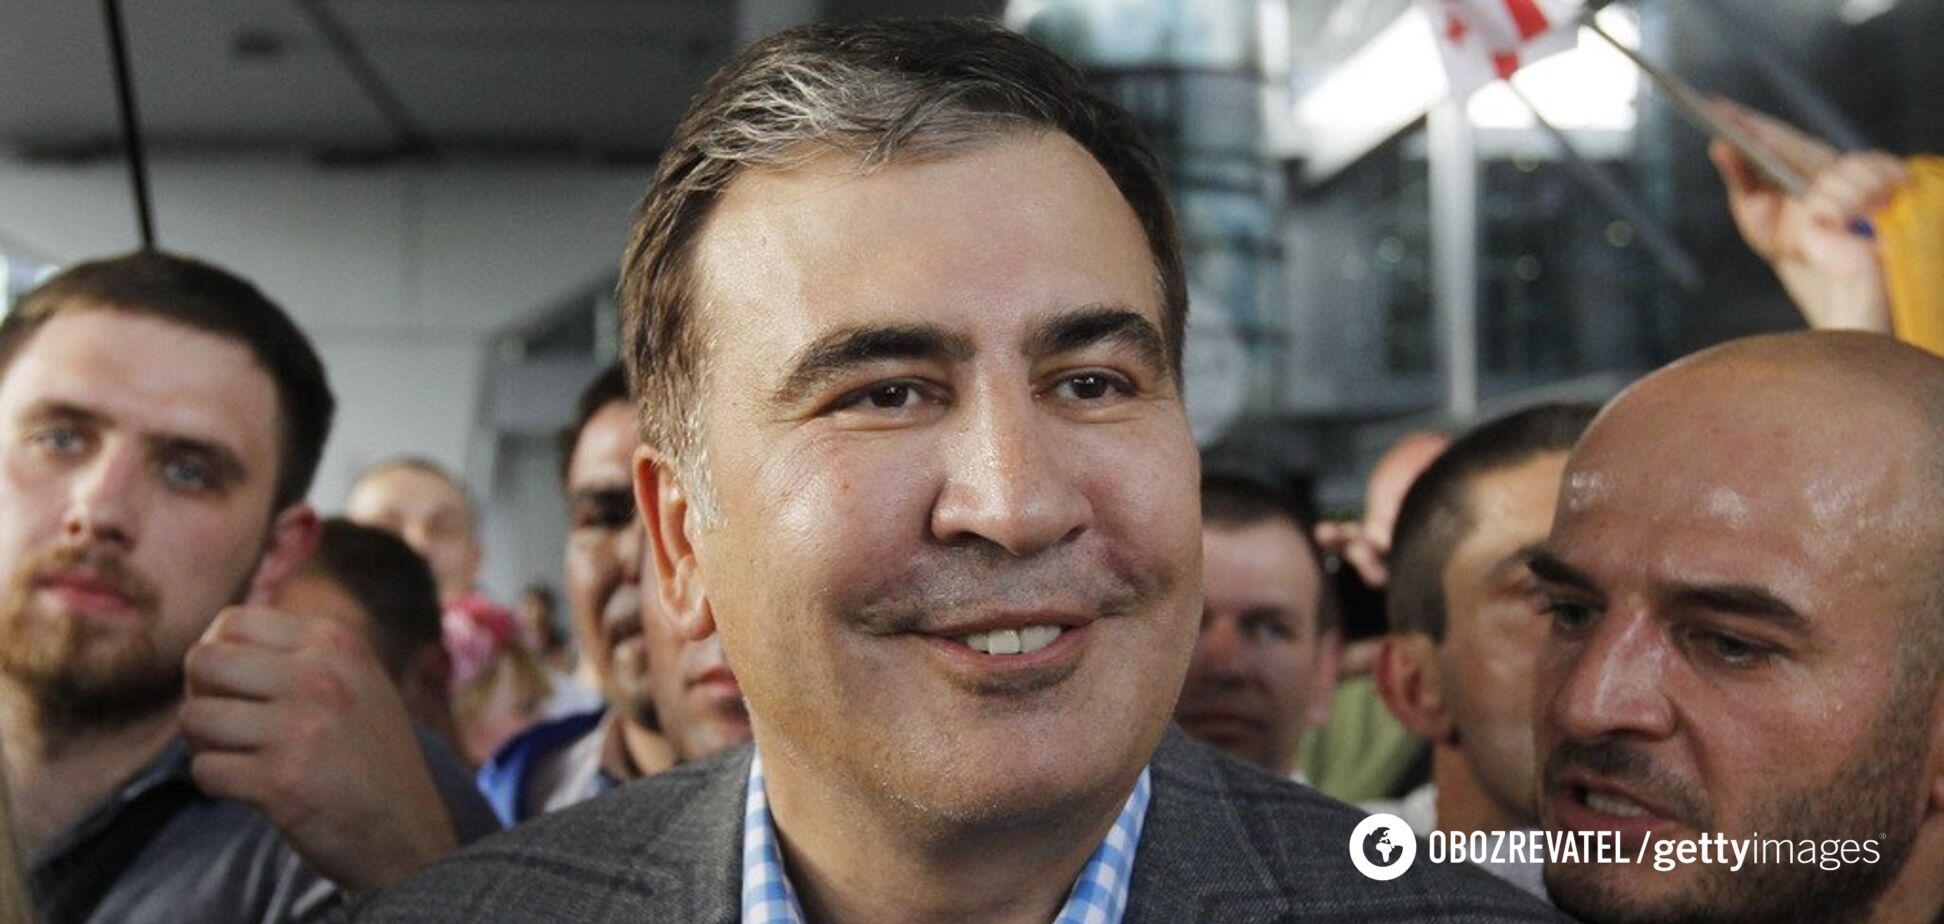   Саакашвили может войти в команду Зеленского: что известно